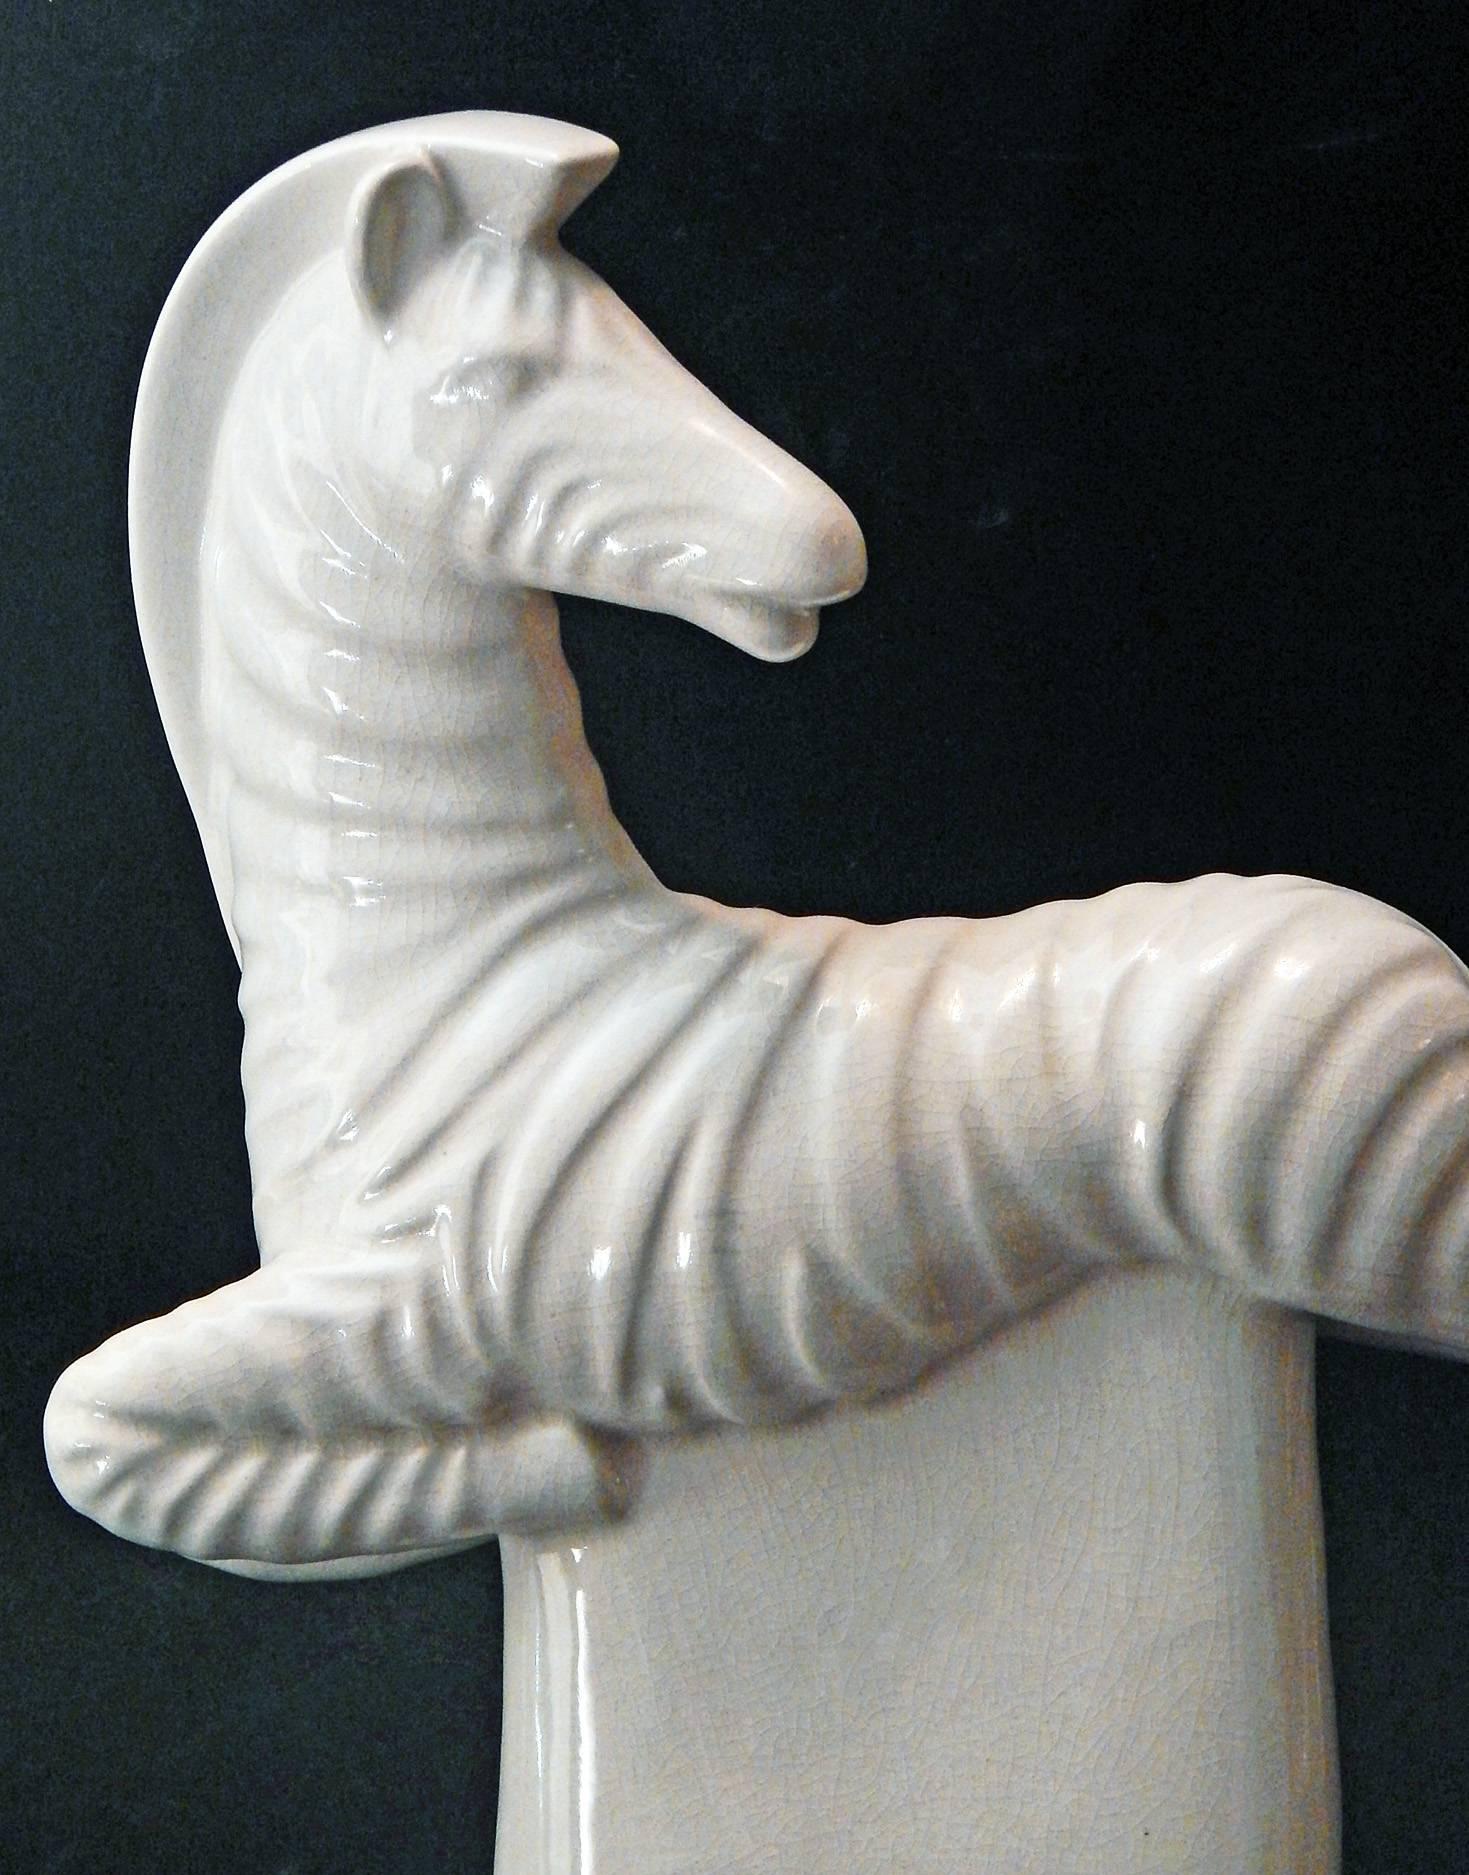 Diese seltene Skulptur von Waylande Gregory aus den 1940er Jahren ist voller Energie und Elan. Sie zeigt ein Zebra in der Luft, das mit eleganter Unbekümmertheit nach hinten schaut. Die Keramikform ist mit einer schönen cremefarbenen Glasur versehen